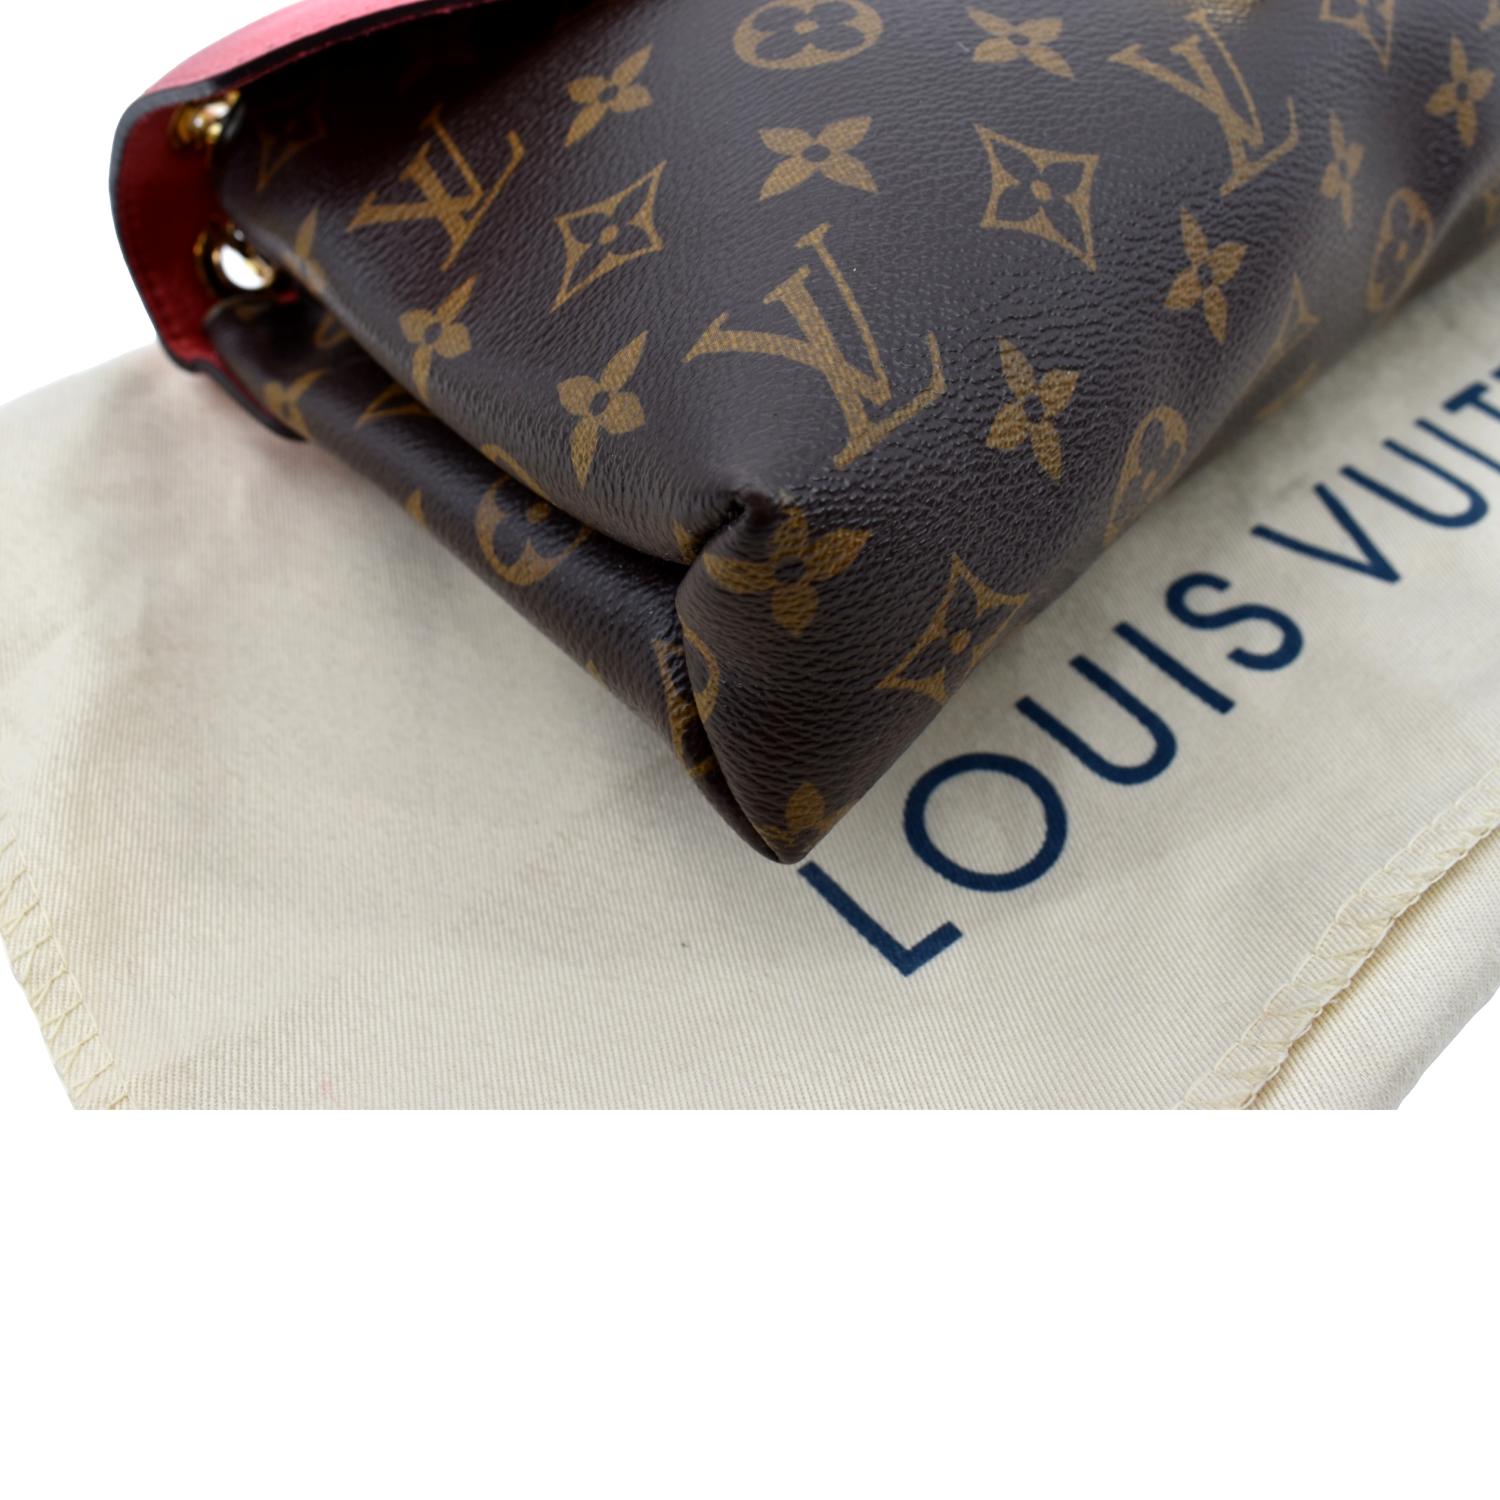 Louis Vuitton Pallas Beauty Case Cherry